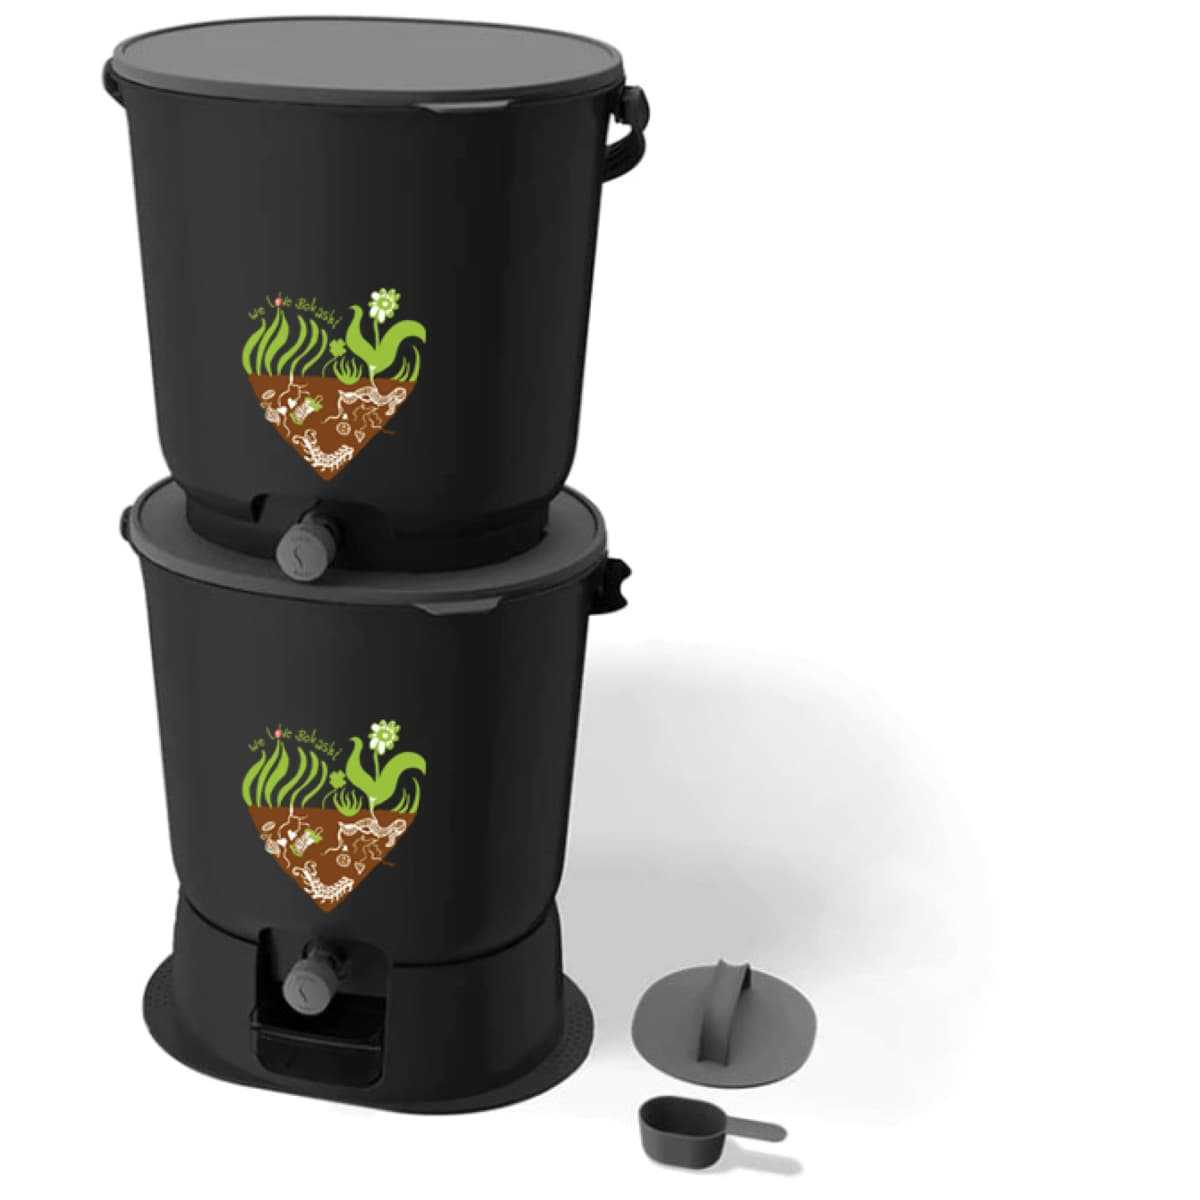 Compost Bokashi : comment ça fonctionne ? Présentation